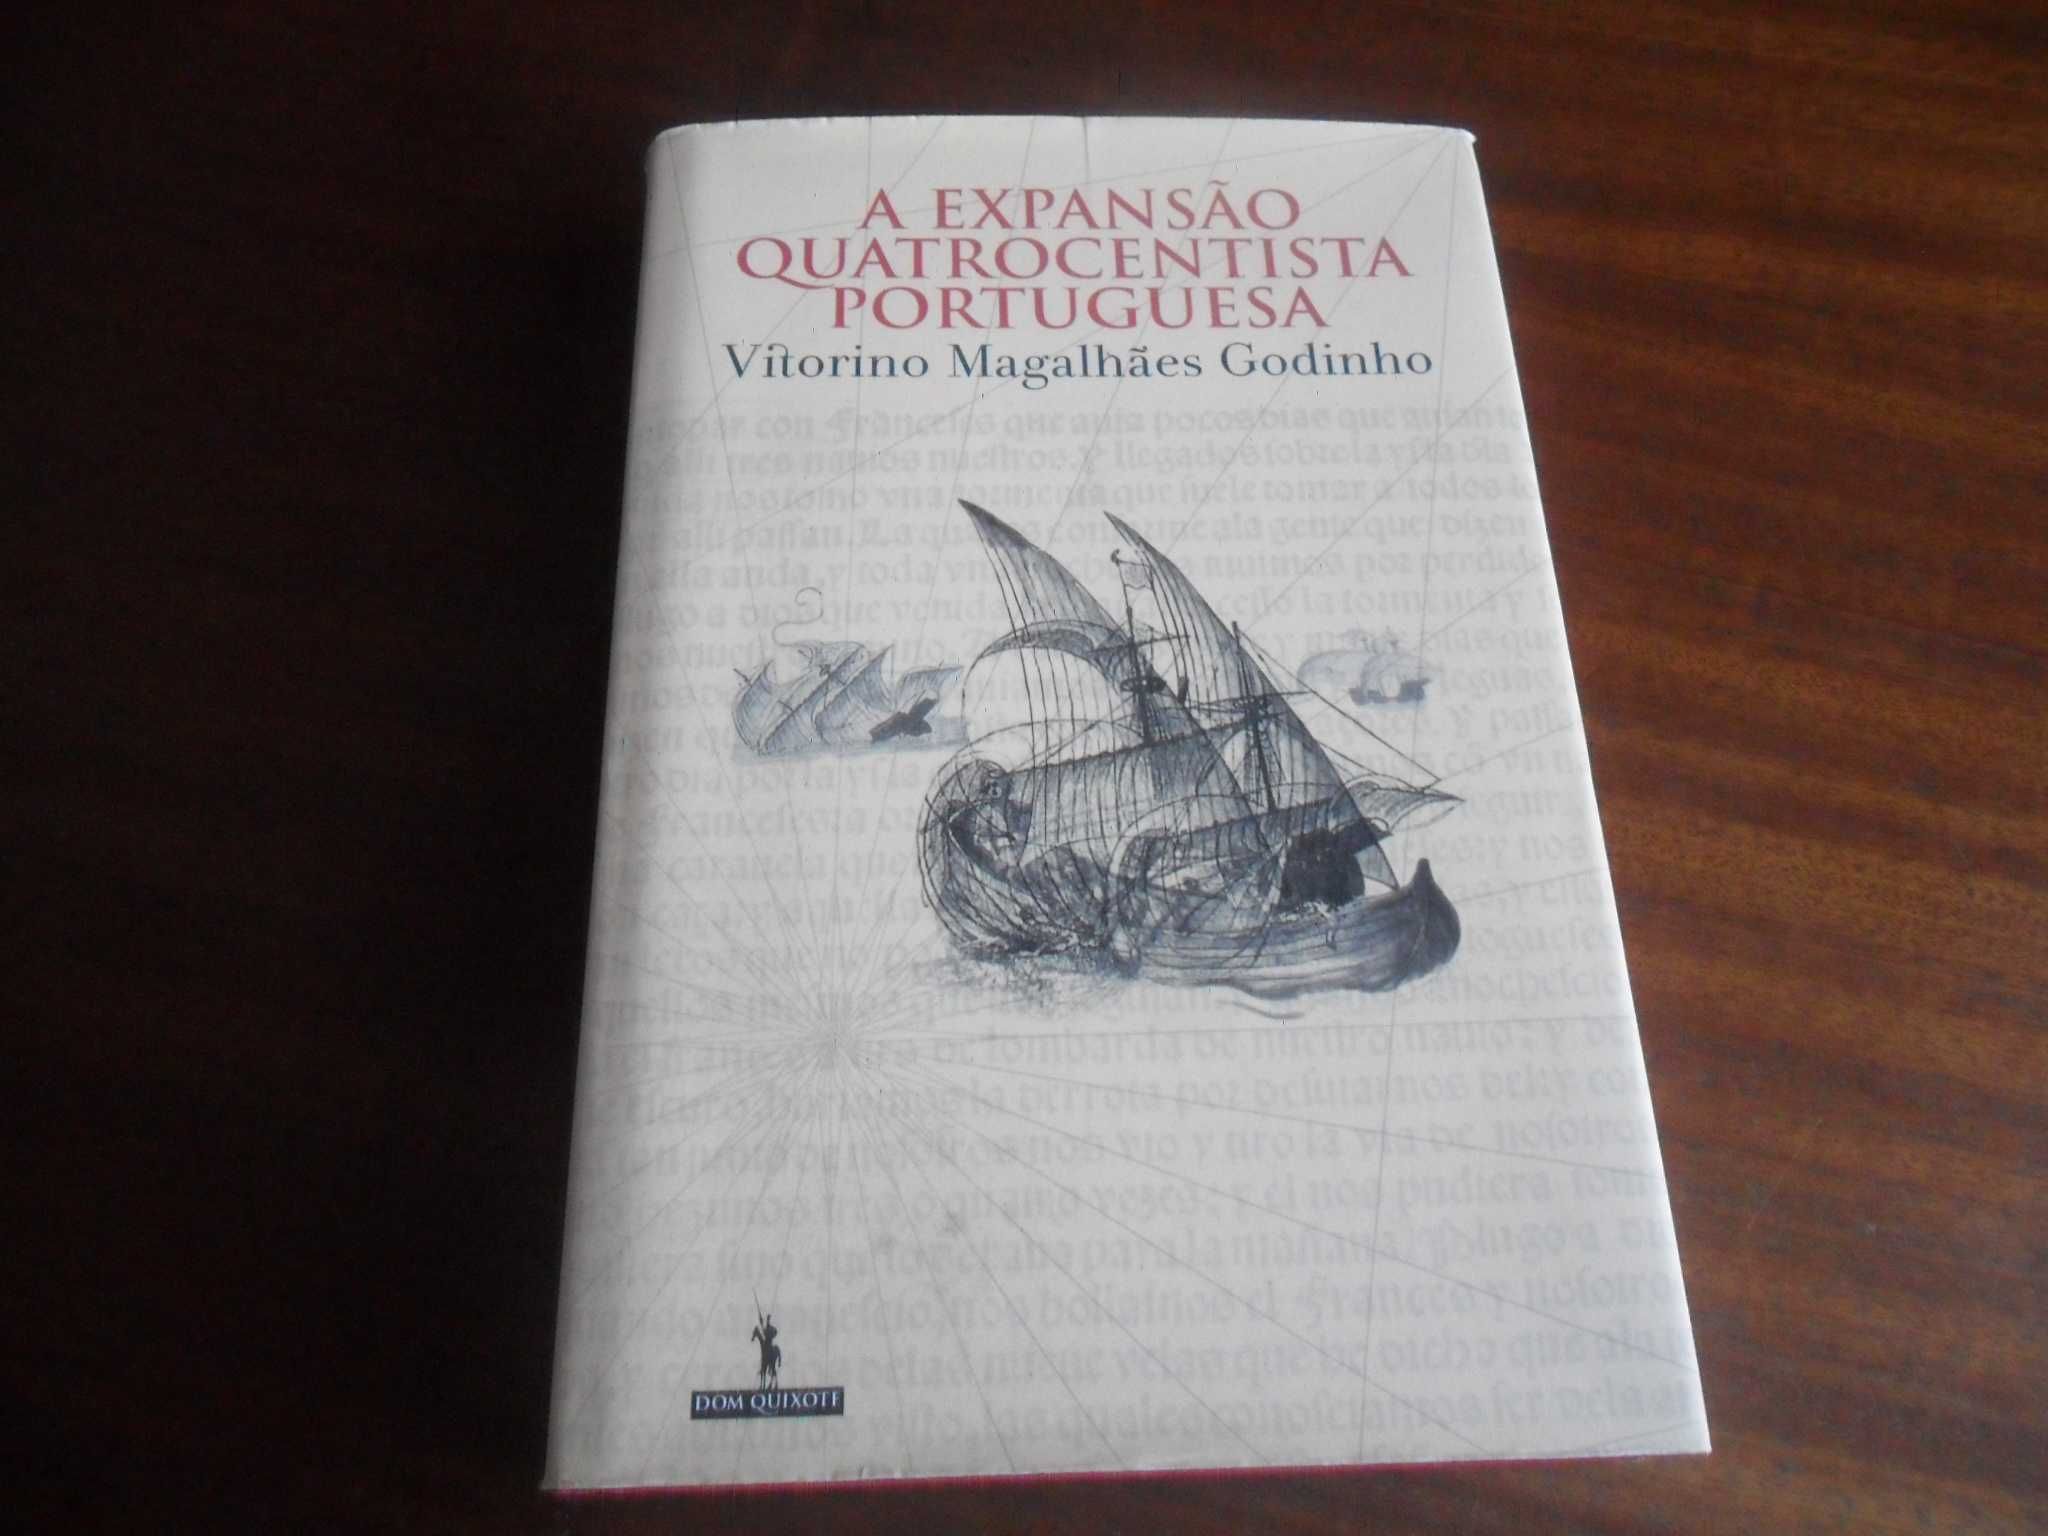 "A Expansão Quatrocentista Portuguesa" de Vitorino Magalhães Godinho